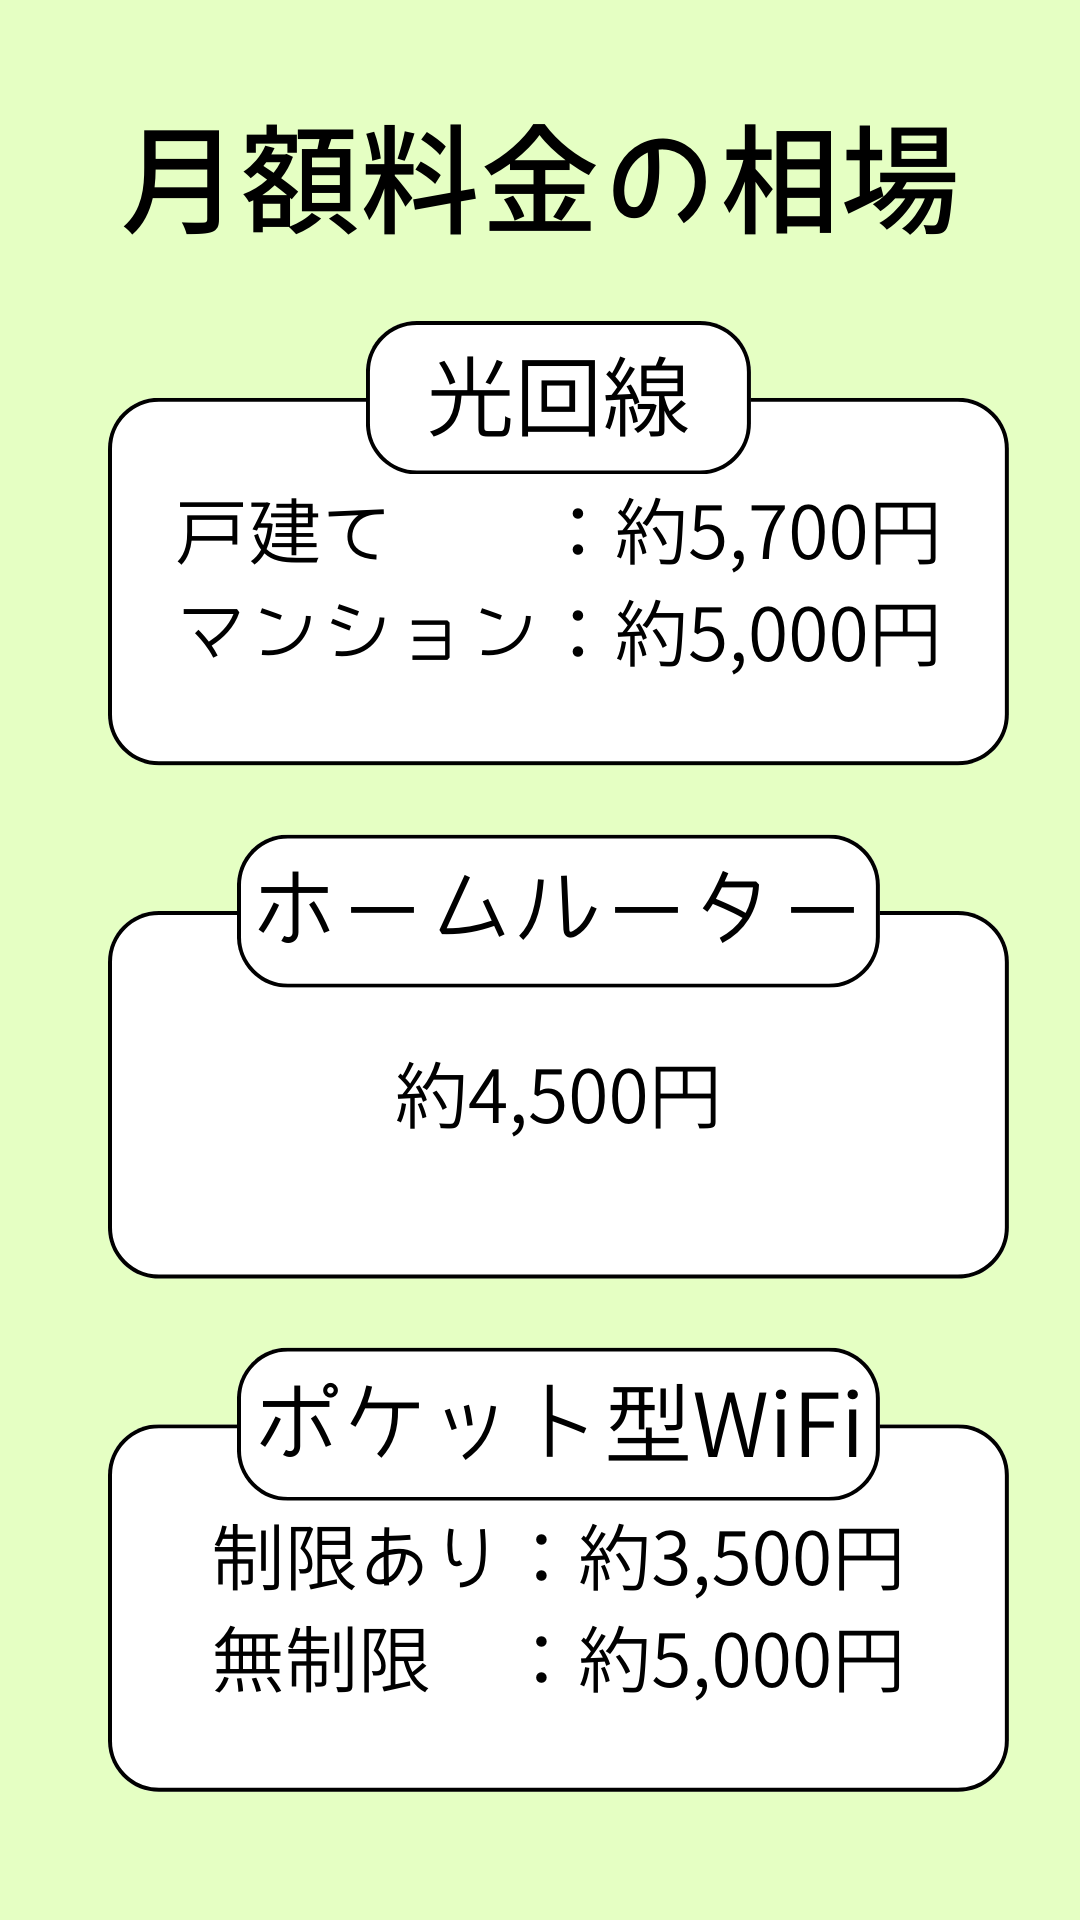 WiFiの料金相場をまとめた表